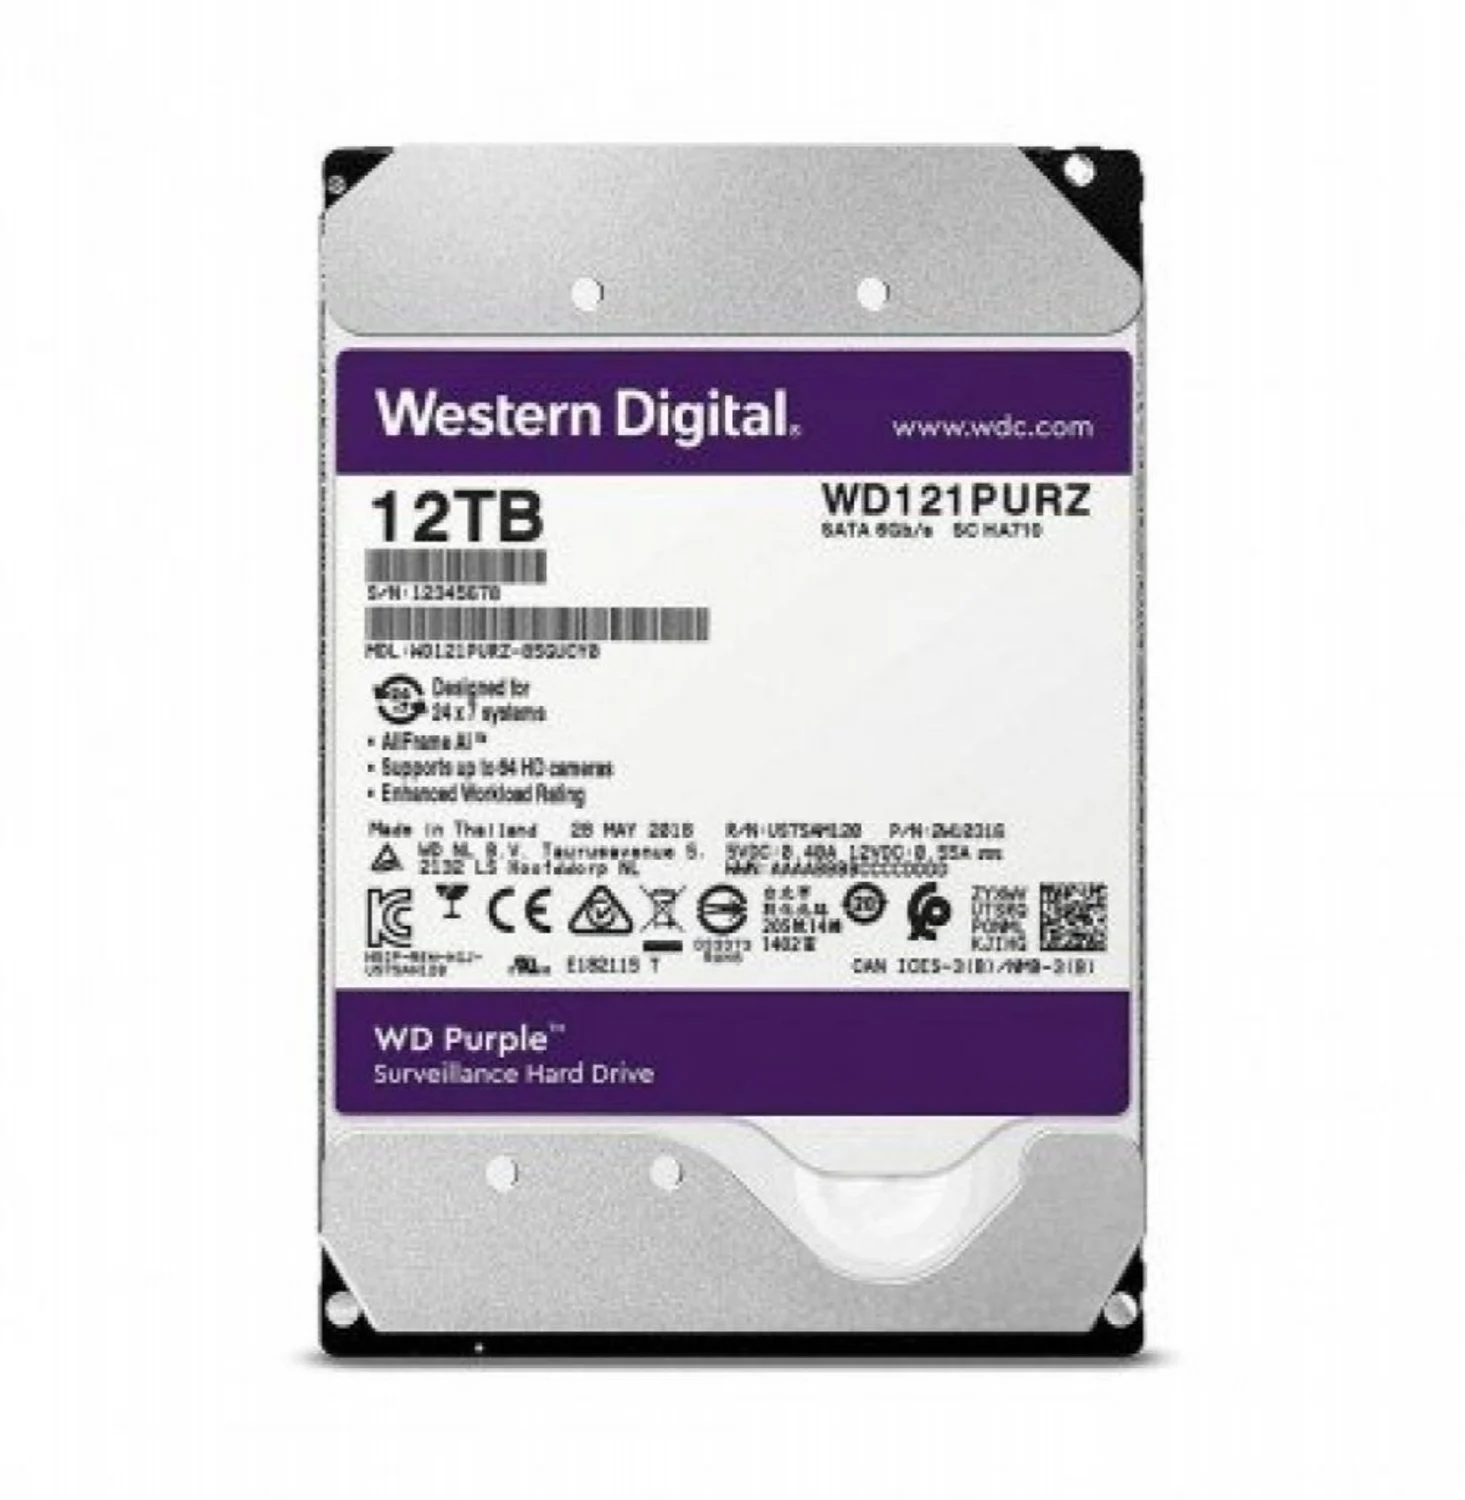 HD Western Digital 12TB / 7200 / Purple - (WD121PURP)